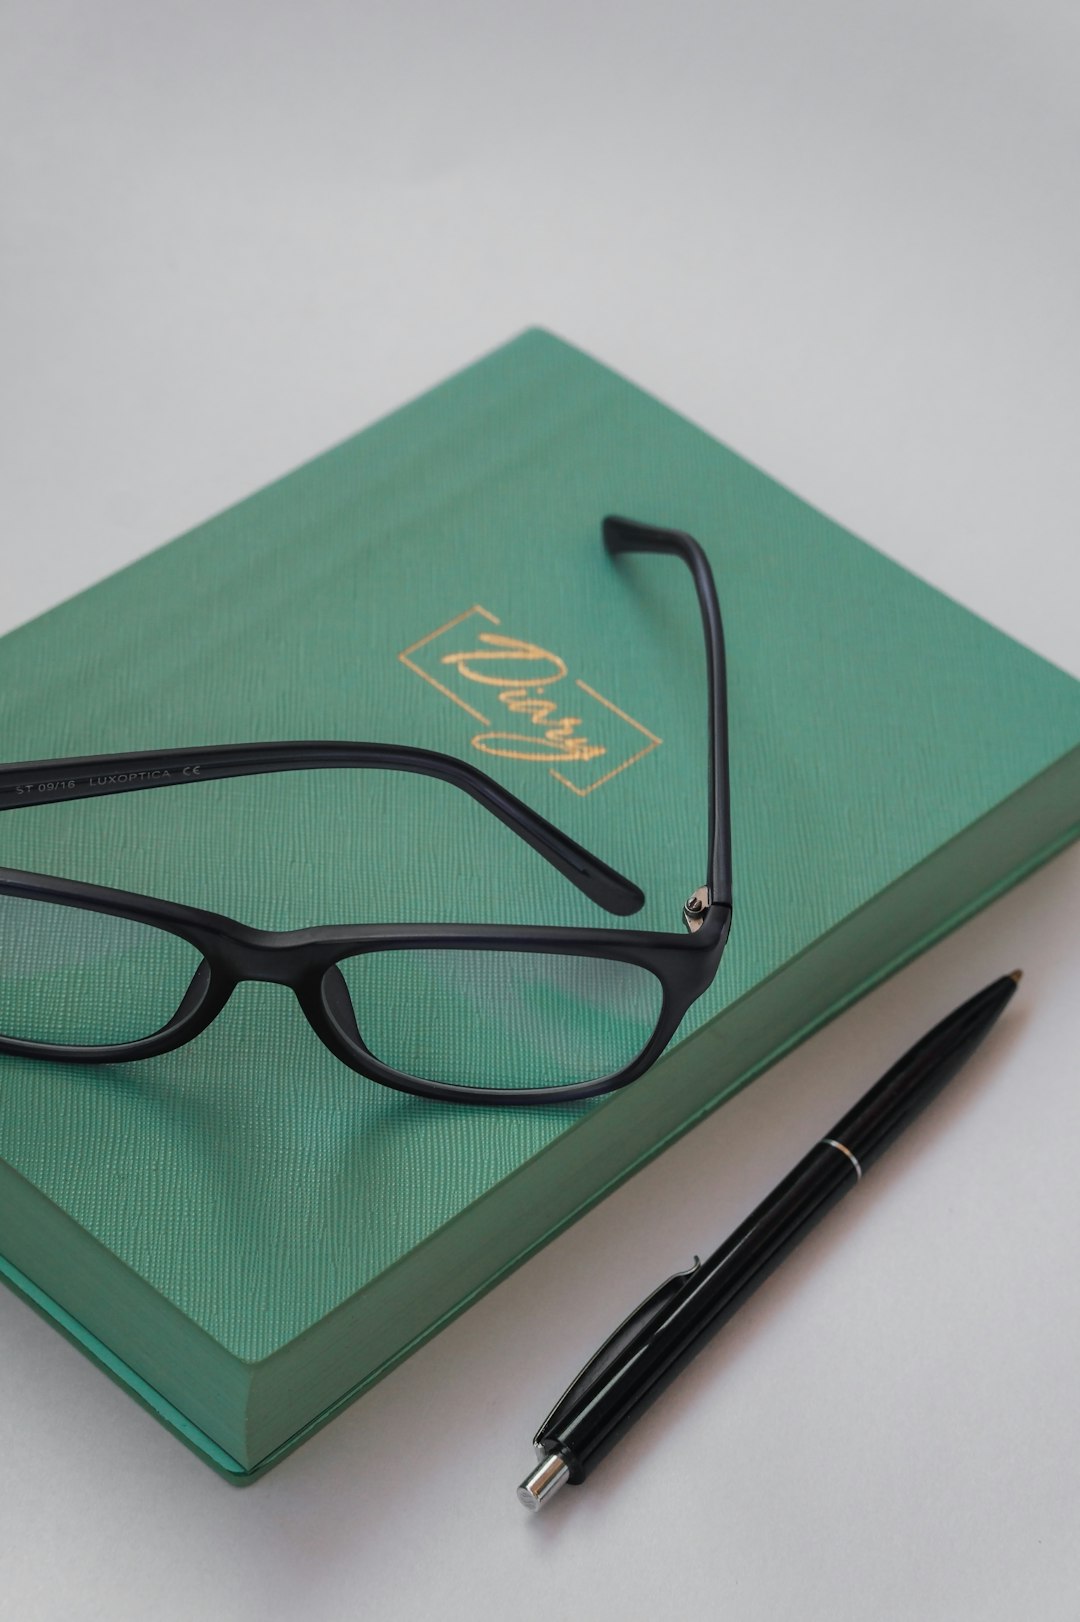 black framed eyeglasses beside black click pen on green book